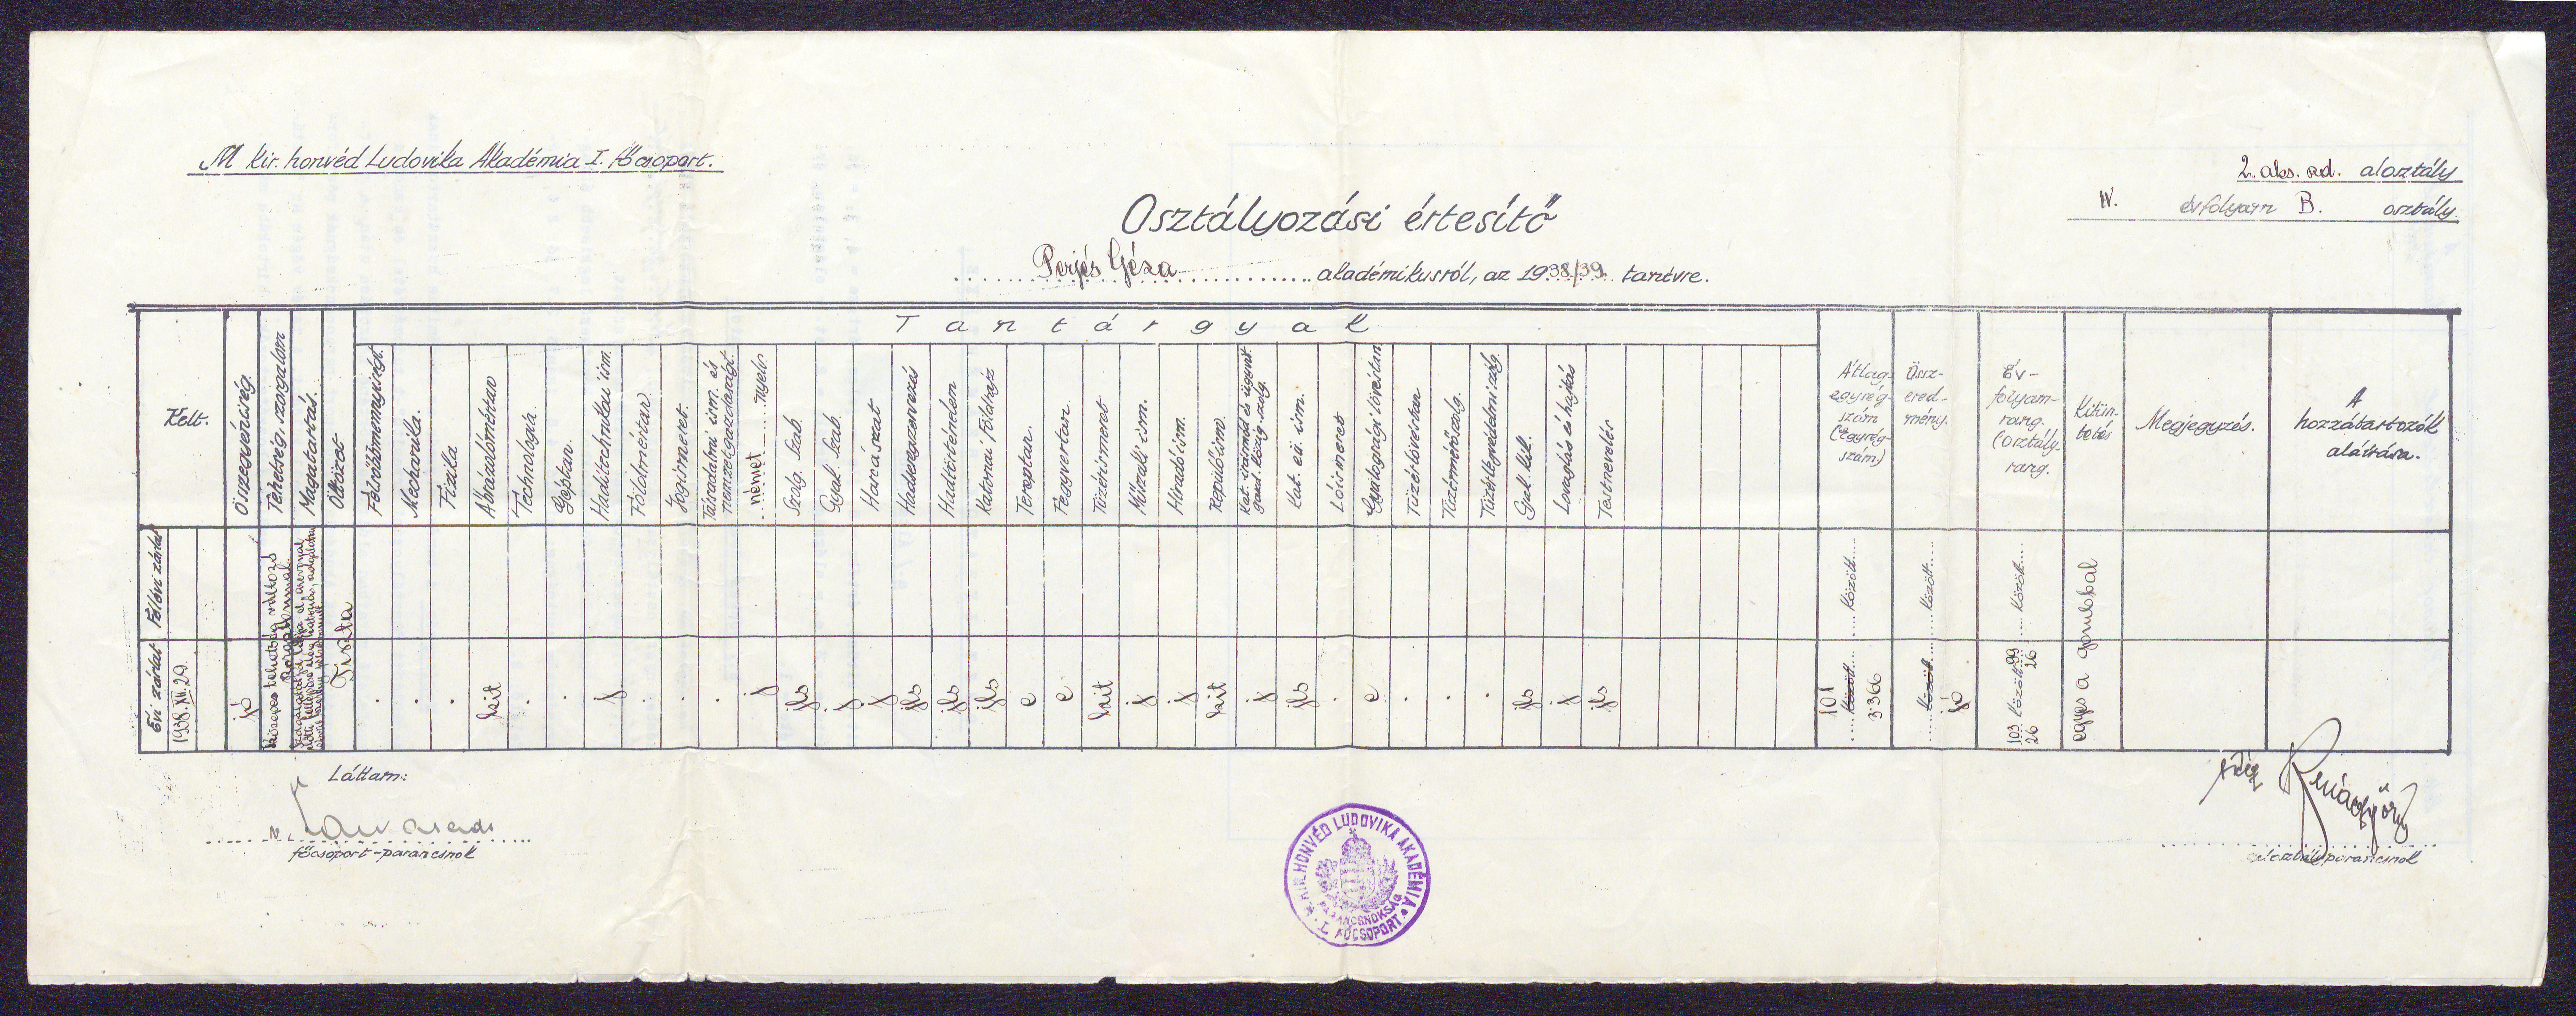 Osztályozási értesító Perjés Géza akadémikusról, az 1938/39. tanévre